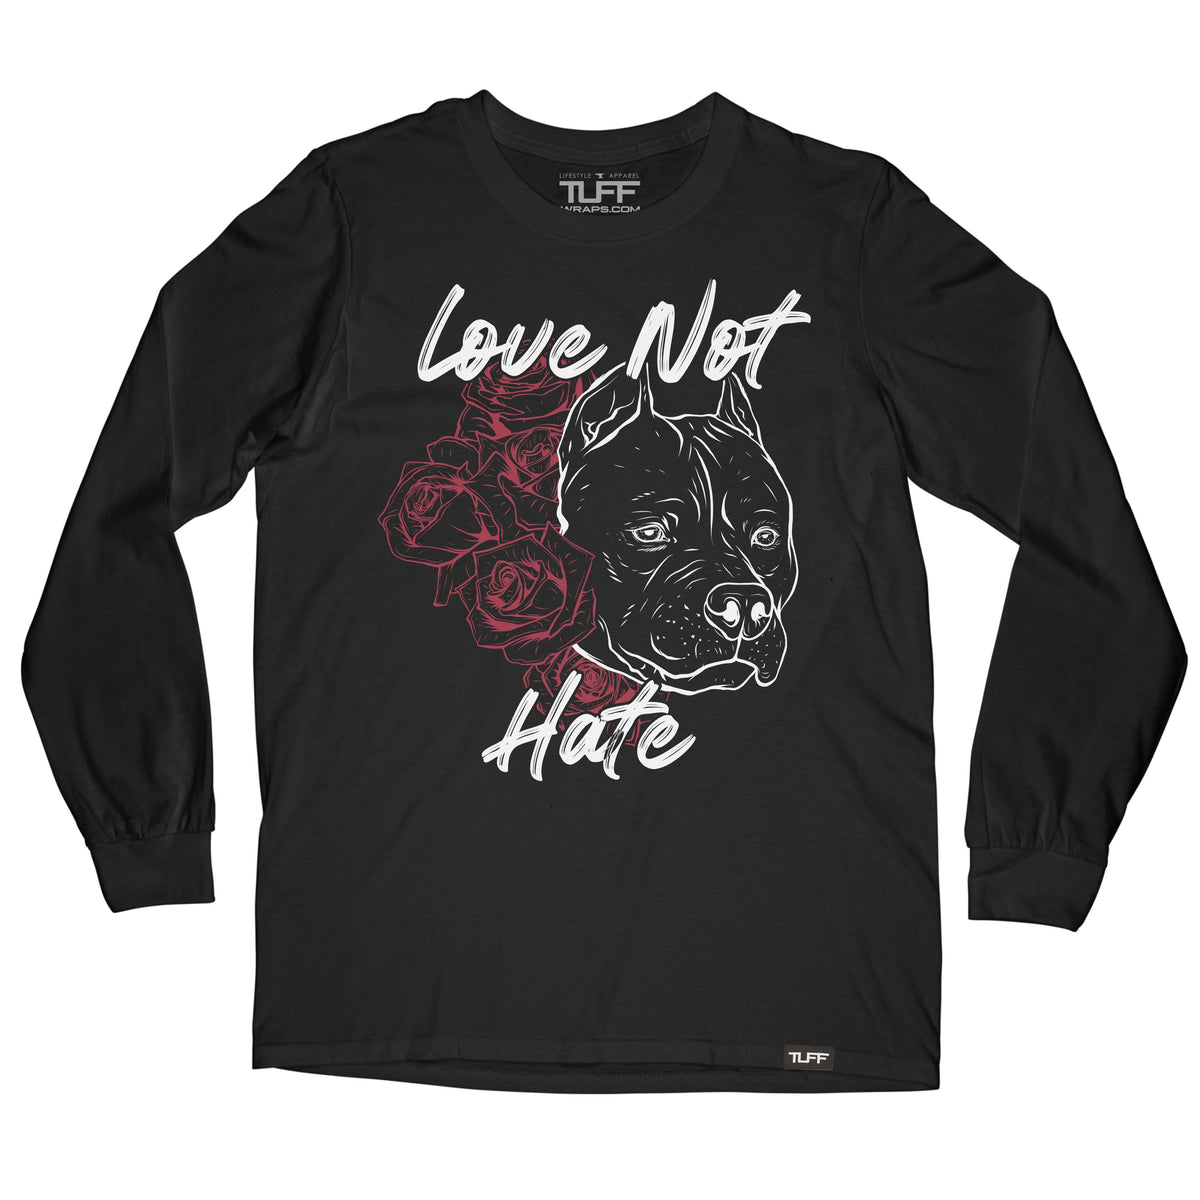 Love Not Hate Long Sleeve Tee S / Black TuffWraps.com